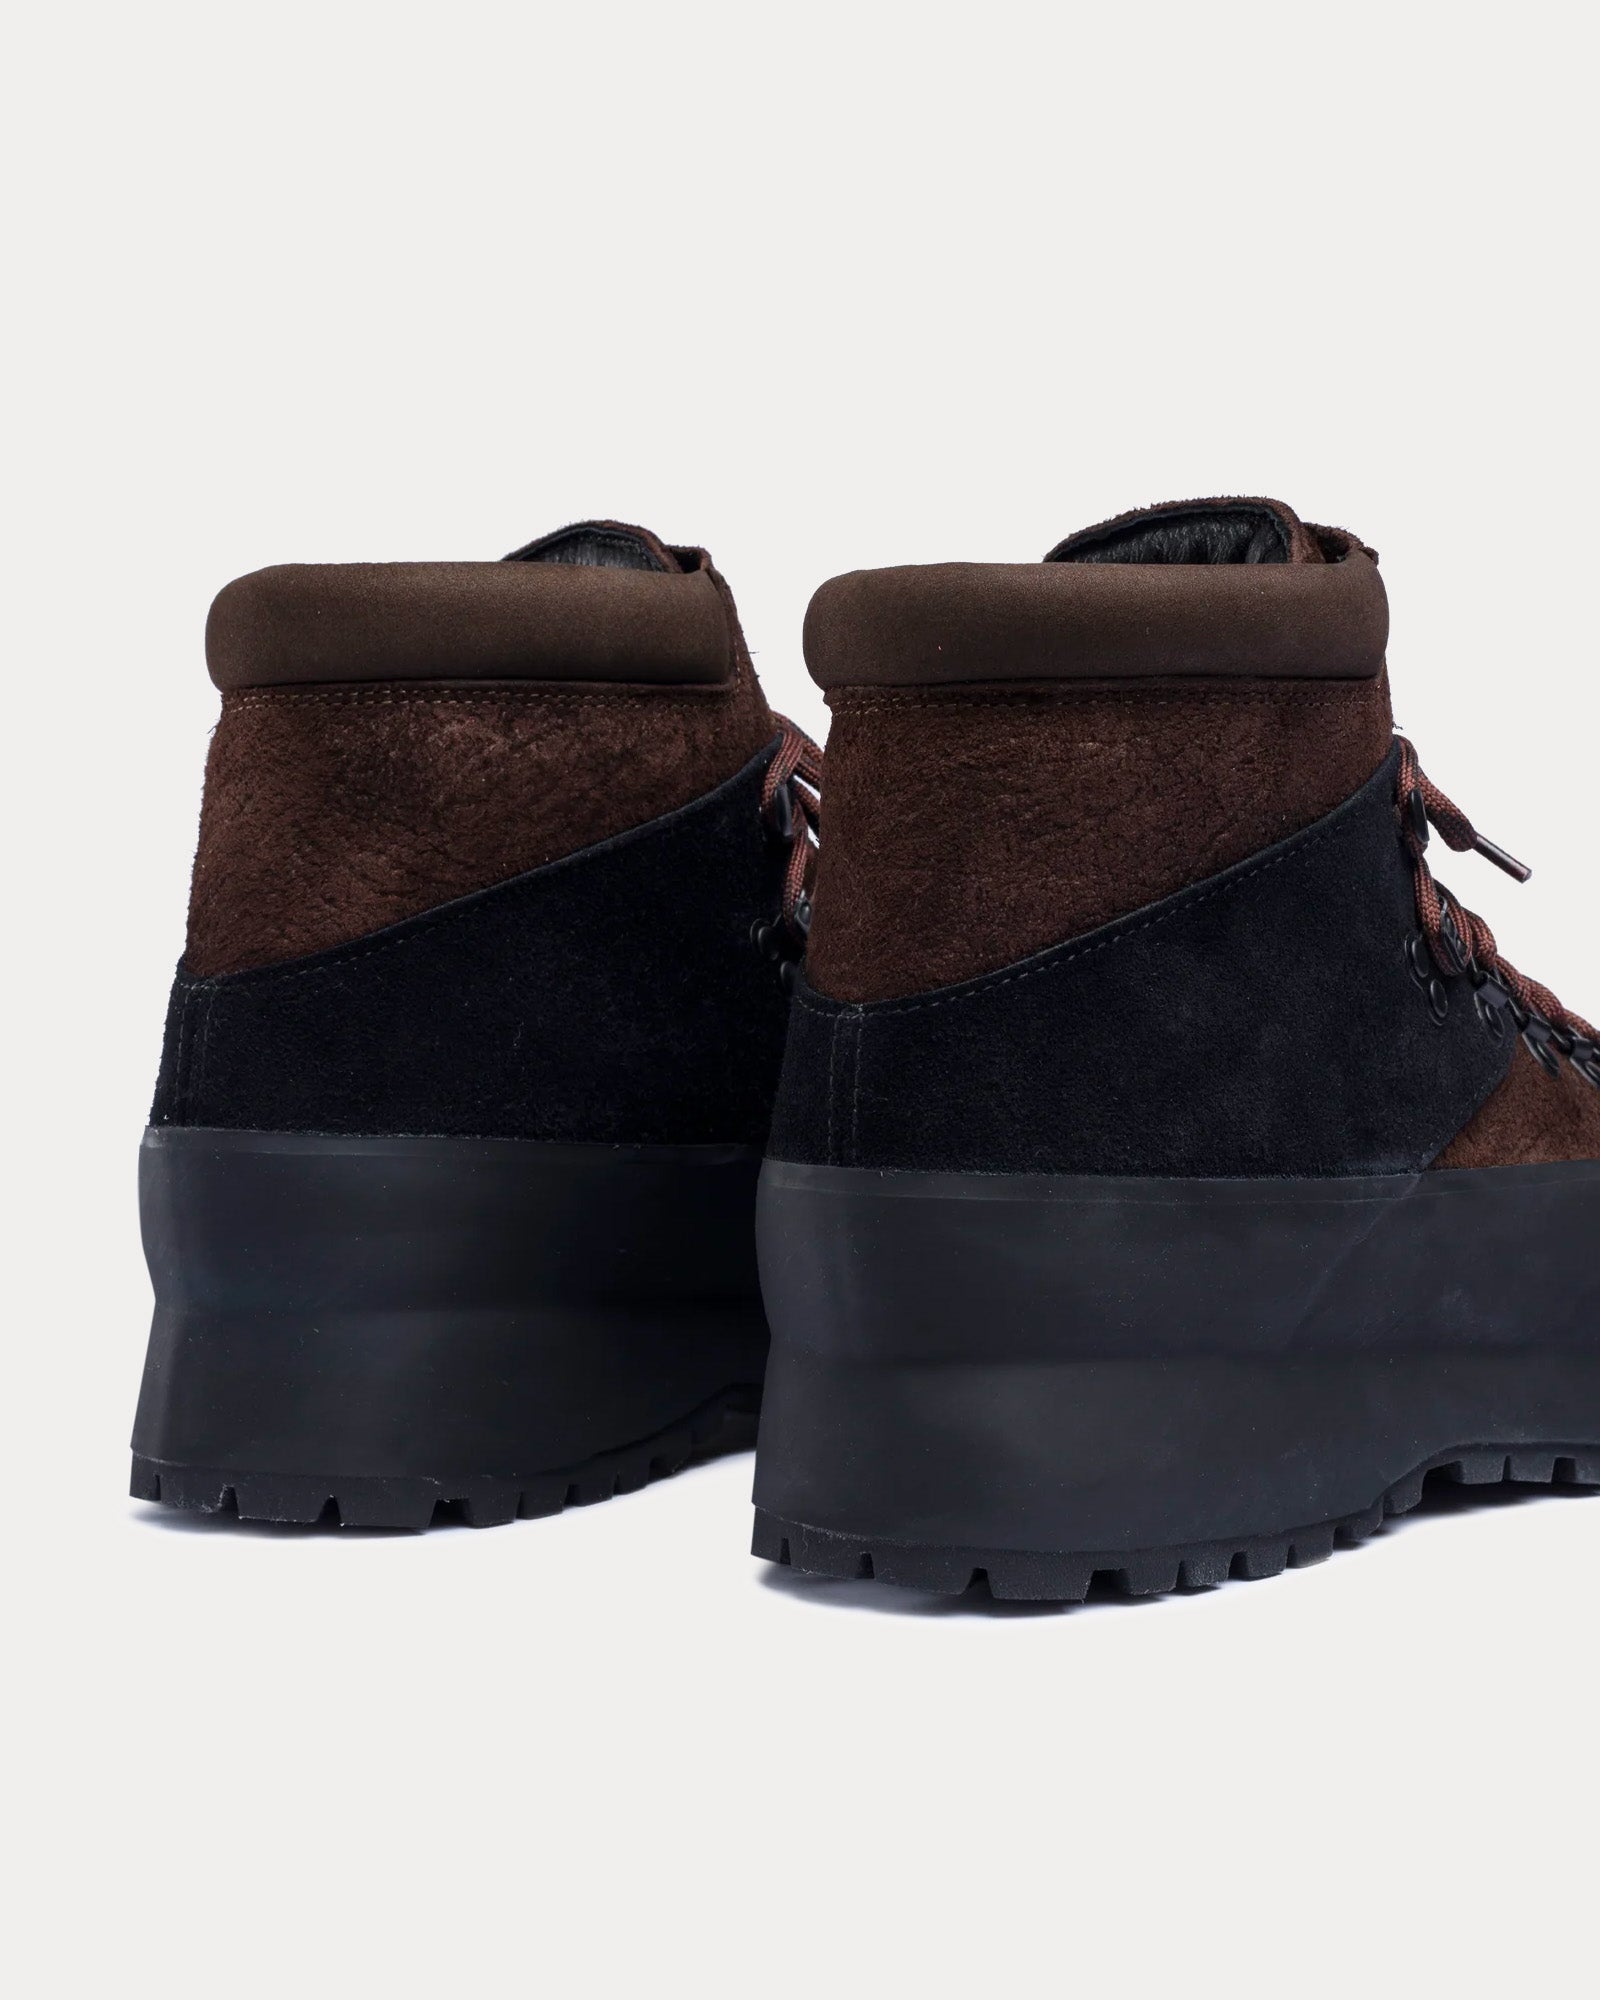 Diemme - Rosset Leather Oak Brown Boots